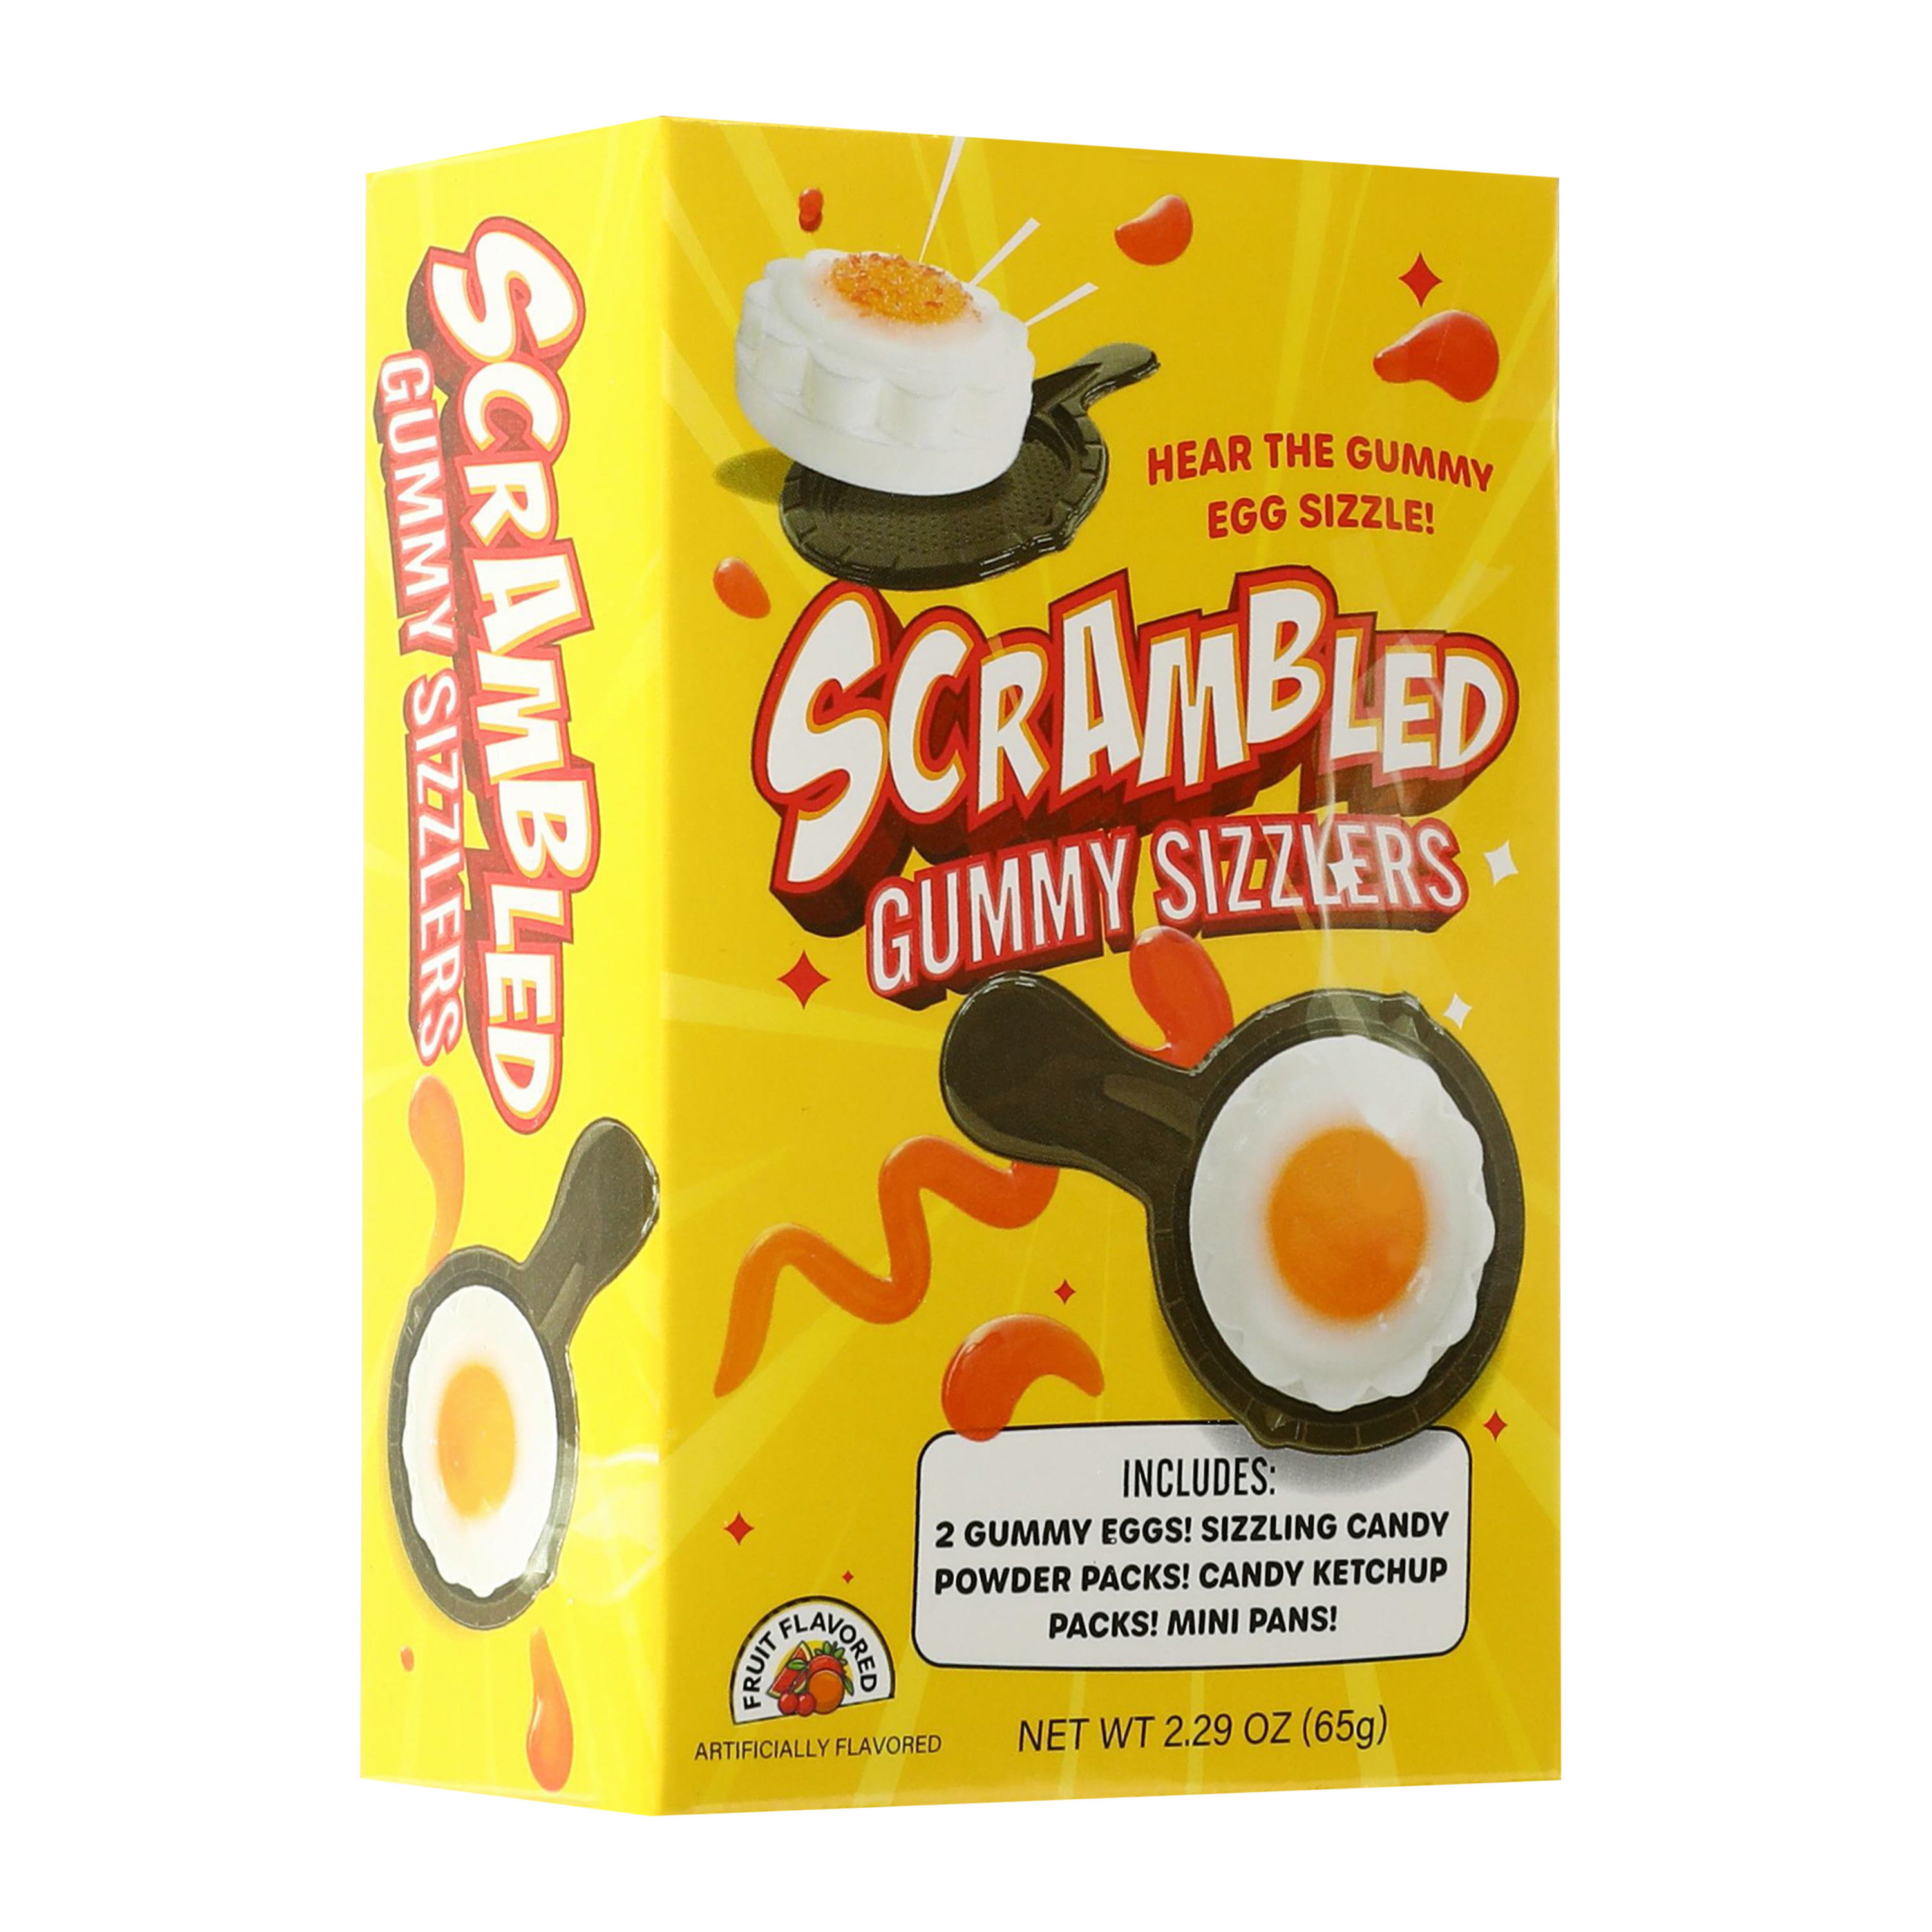 Scrambled Gummy Sizzlers Candy 2.29oz